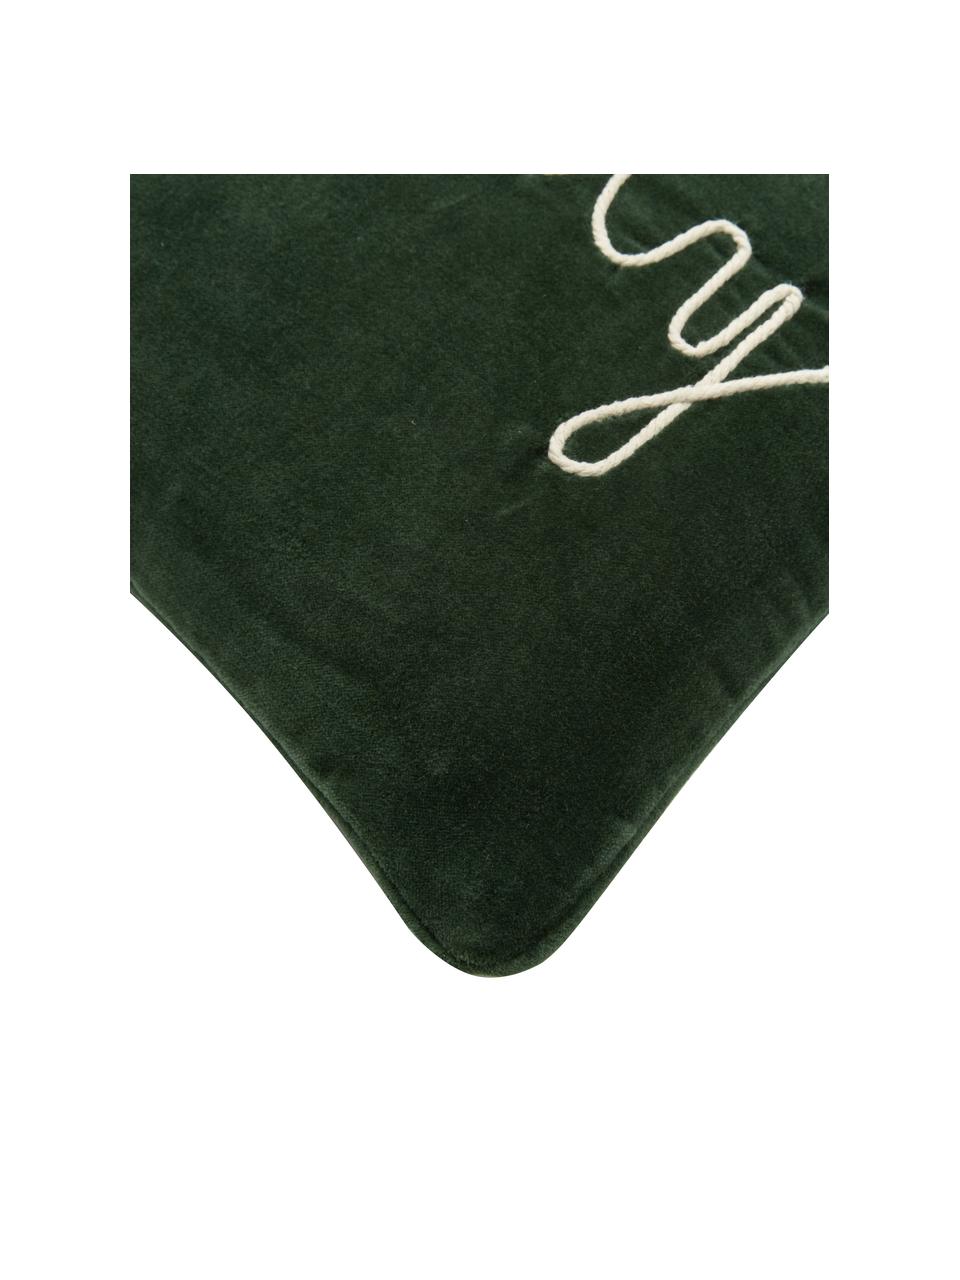 Poszewka na poduszkę z aksamitu z haftem i lamówką Holly Jolly, Aksamit (100% bawełna), Zielony, S 30 x D 50 cm